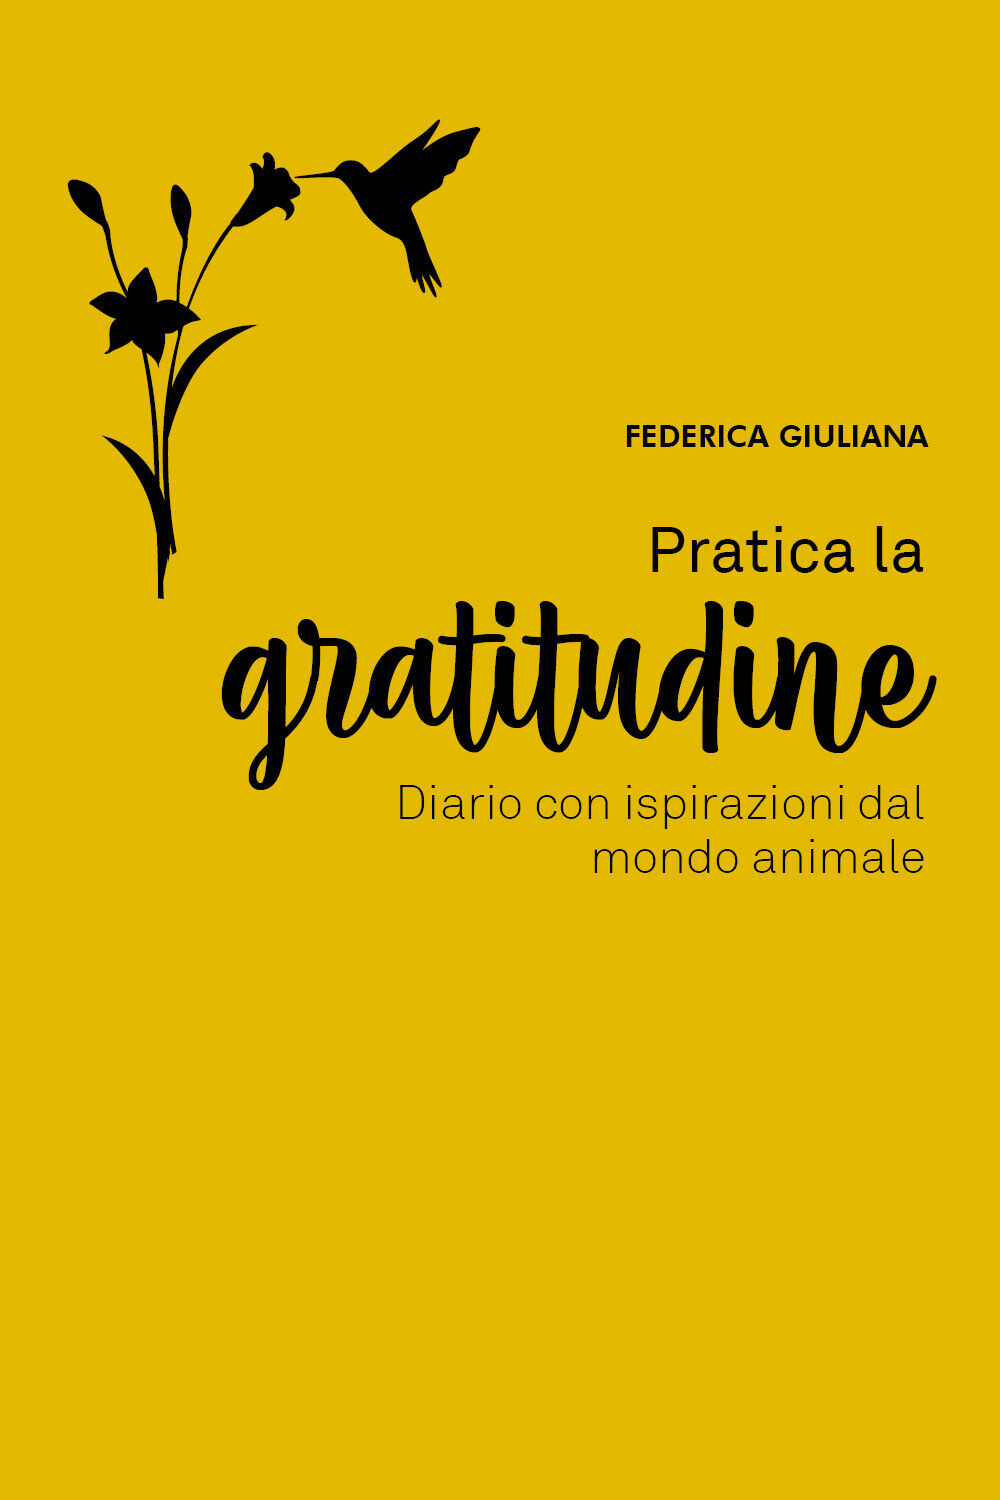 Pratica la gratitudine: diario con ispirazioni dal mondo animale, F. Giuliana